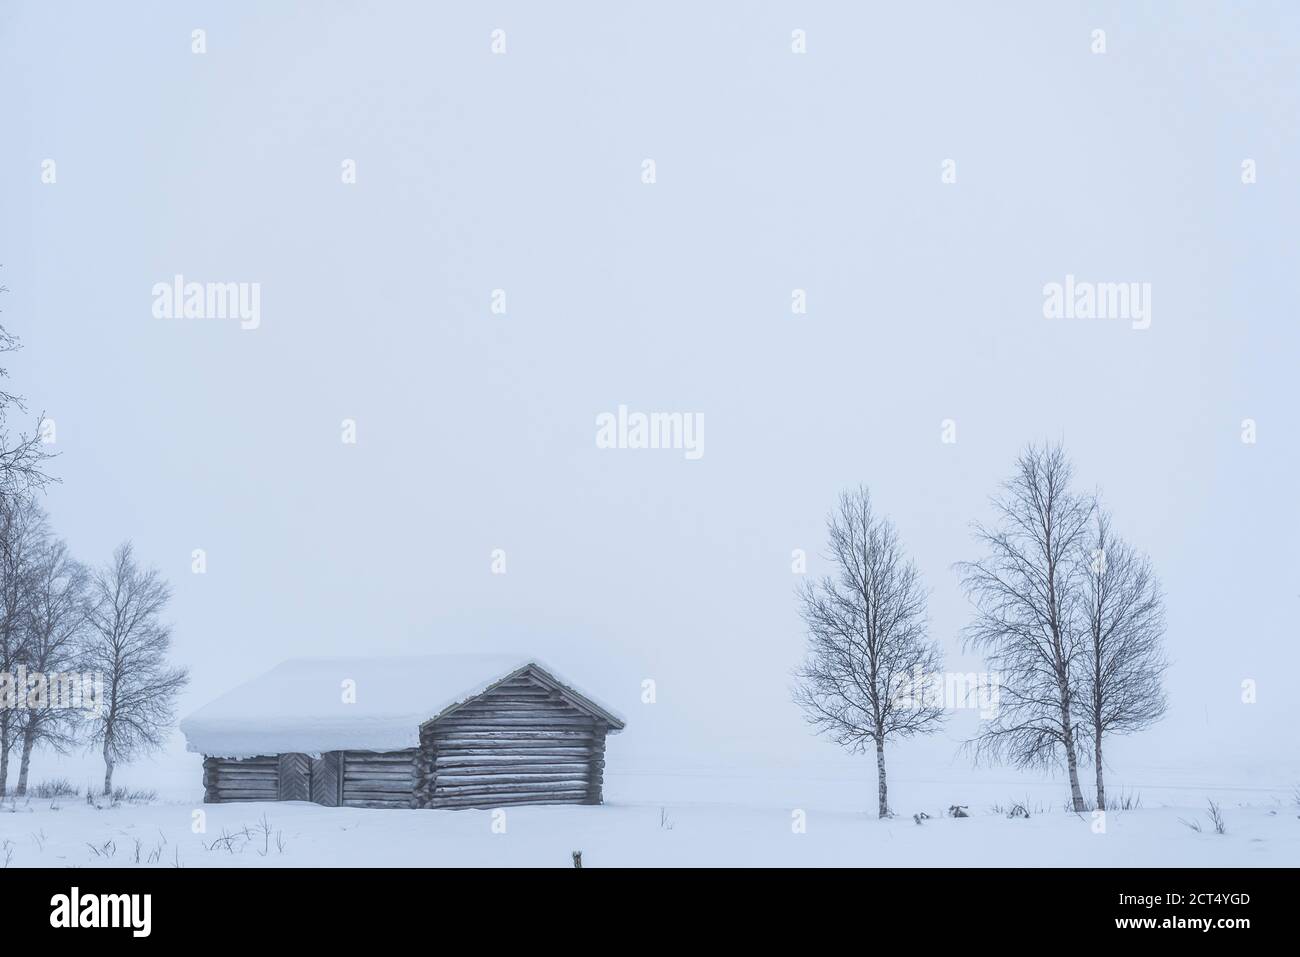 Cabina in un freddo paesaggio invernale in Lapponia all'interno del Circolo polare artico in Finlandia Foto Stock